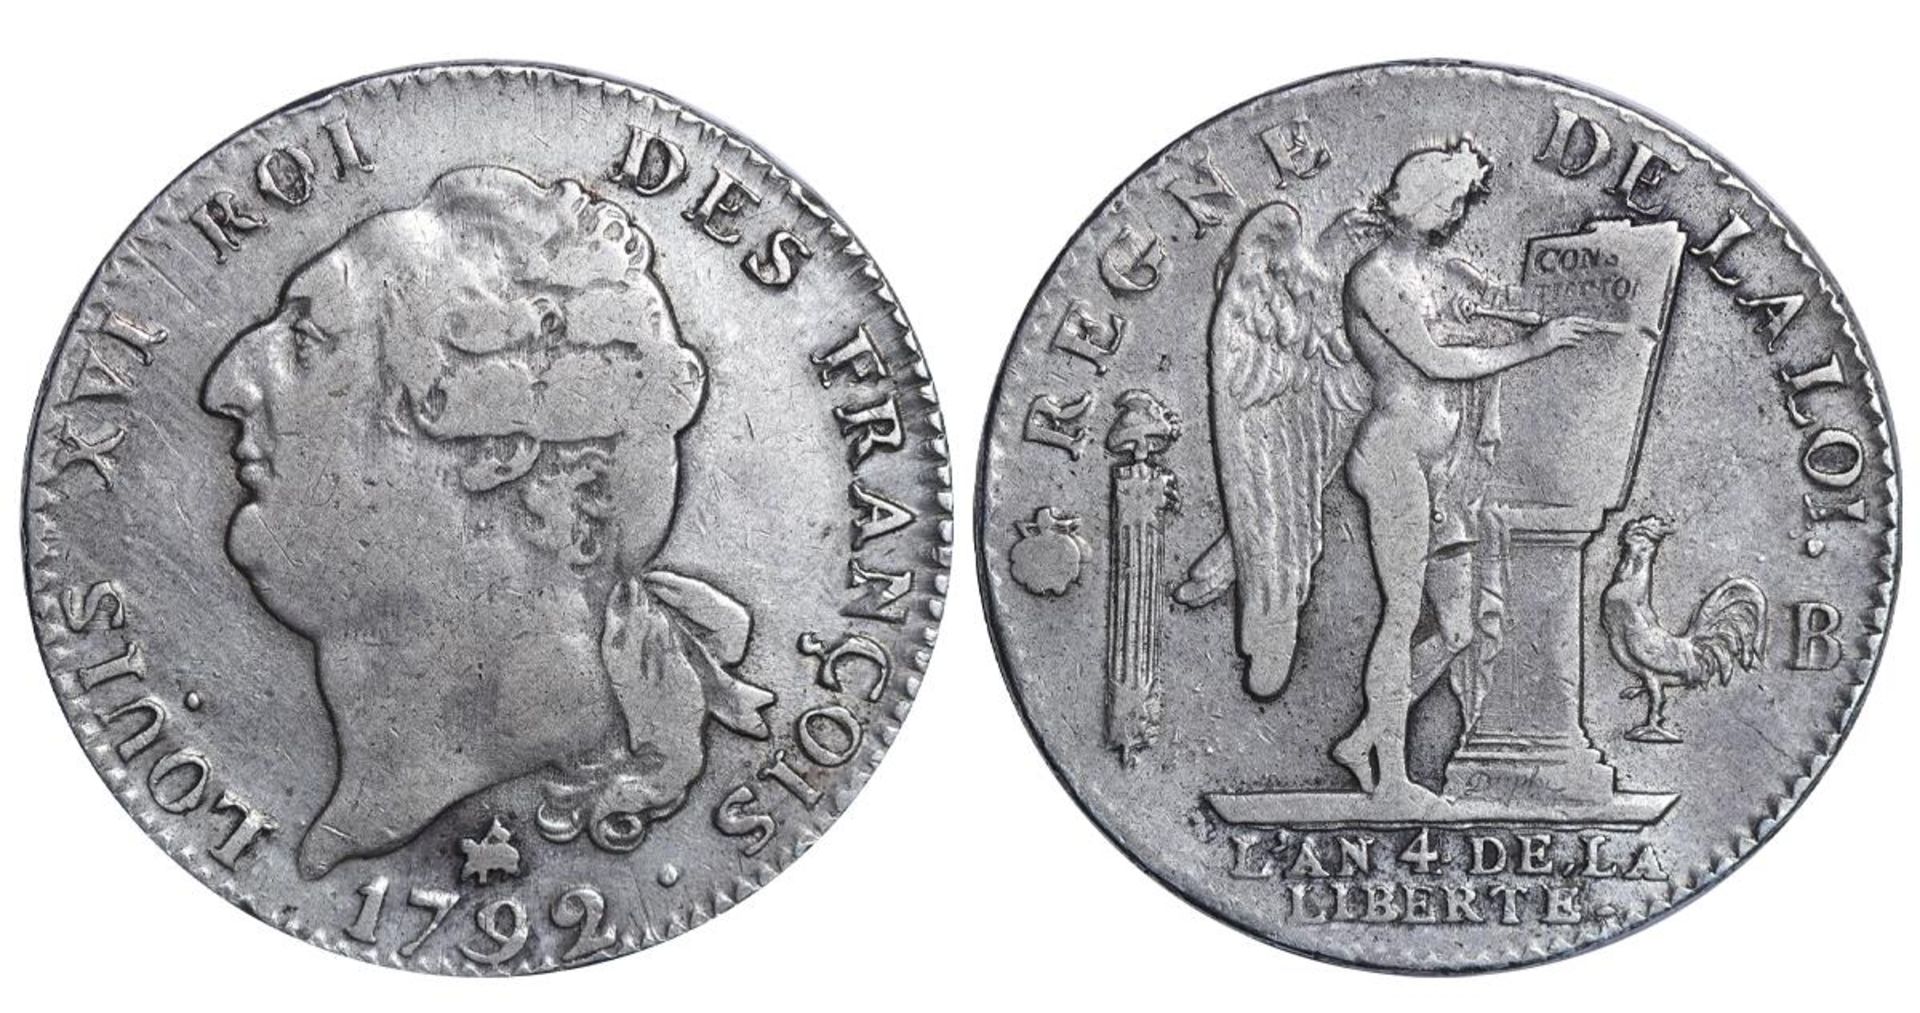 France, 1 Ecu, 1792 year, B